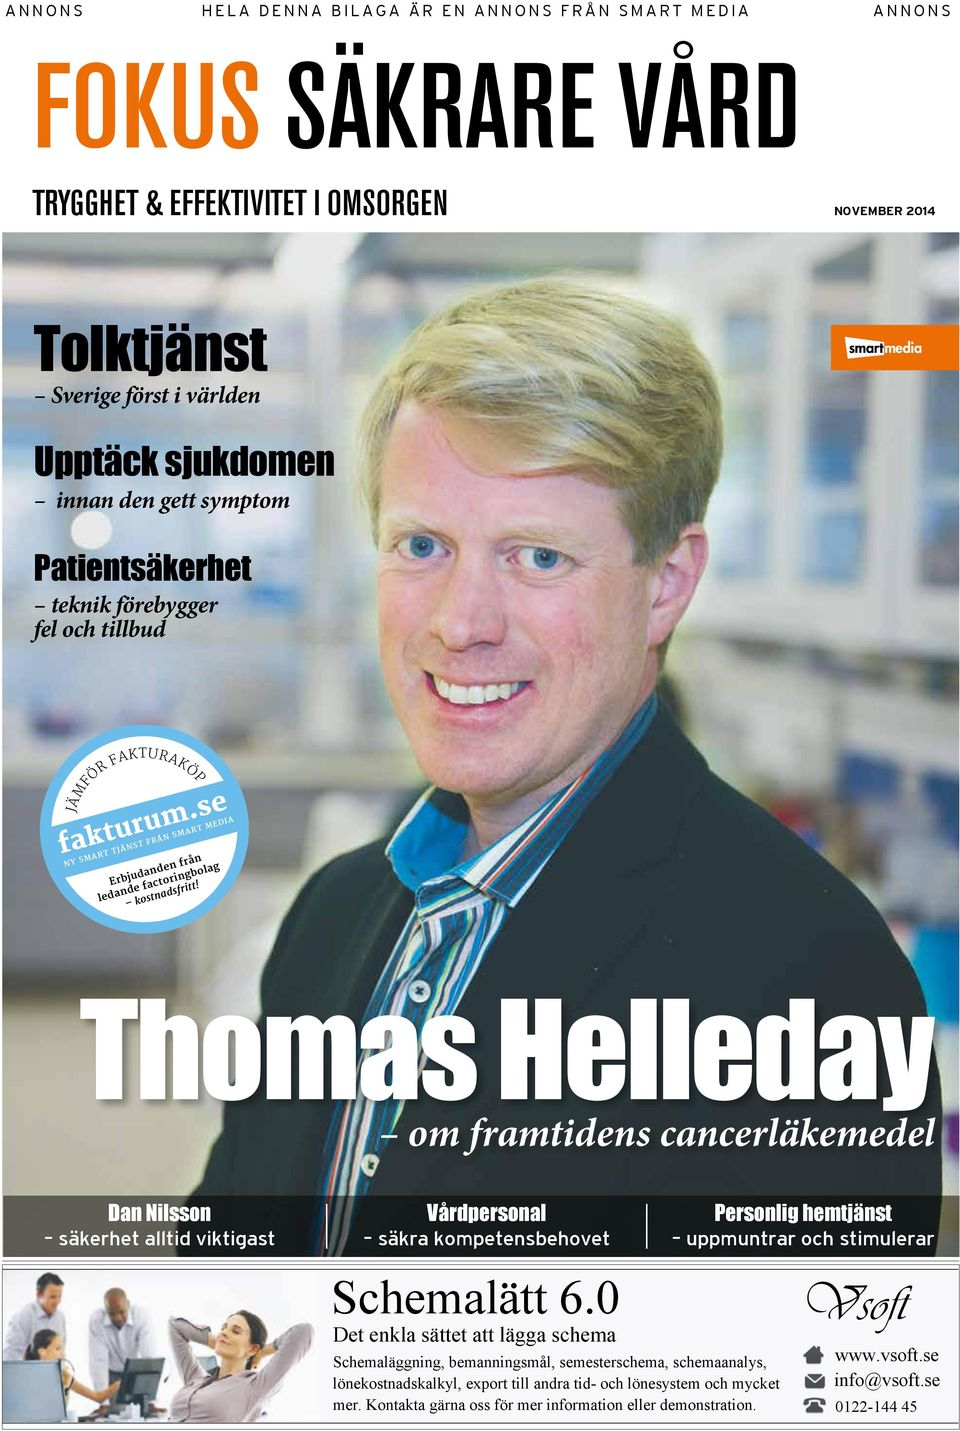 Thomas Helleday om framtidens cancerläkemedel Dan Nilsson säkerhet alltid viktigast Vårdpersonal säkra kompetensbehovet Personlig hemtjänst uppmuntrar och stimulerar Schemalätt 6.